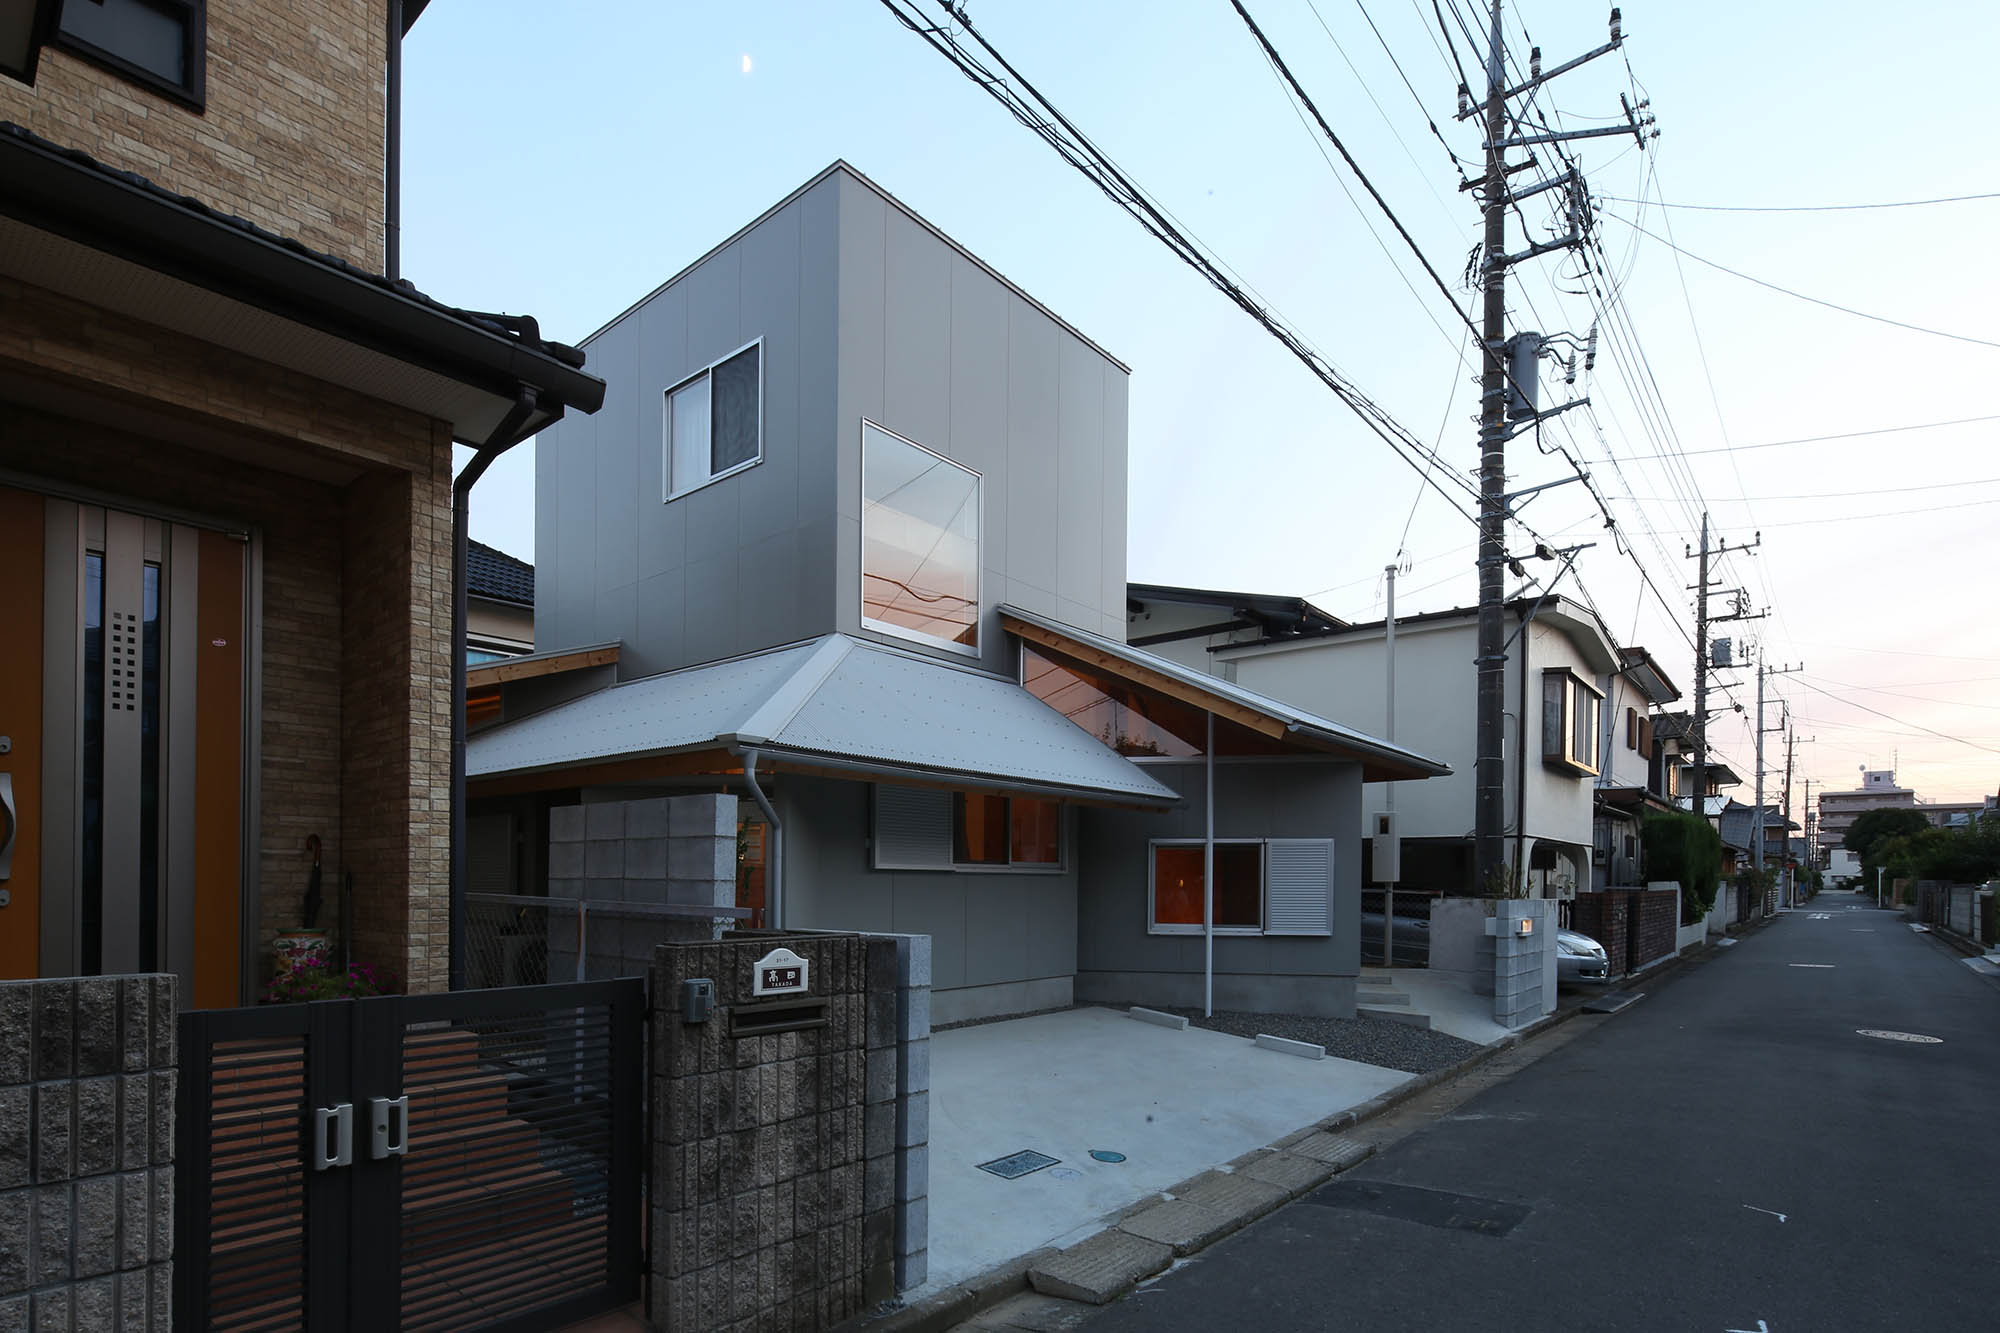 Courtyard House by MATSUOKASATOSHITAMURAYUKI